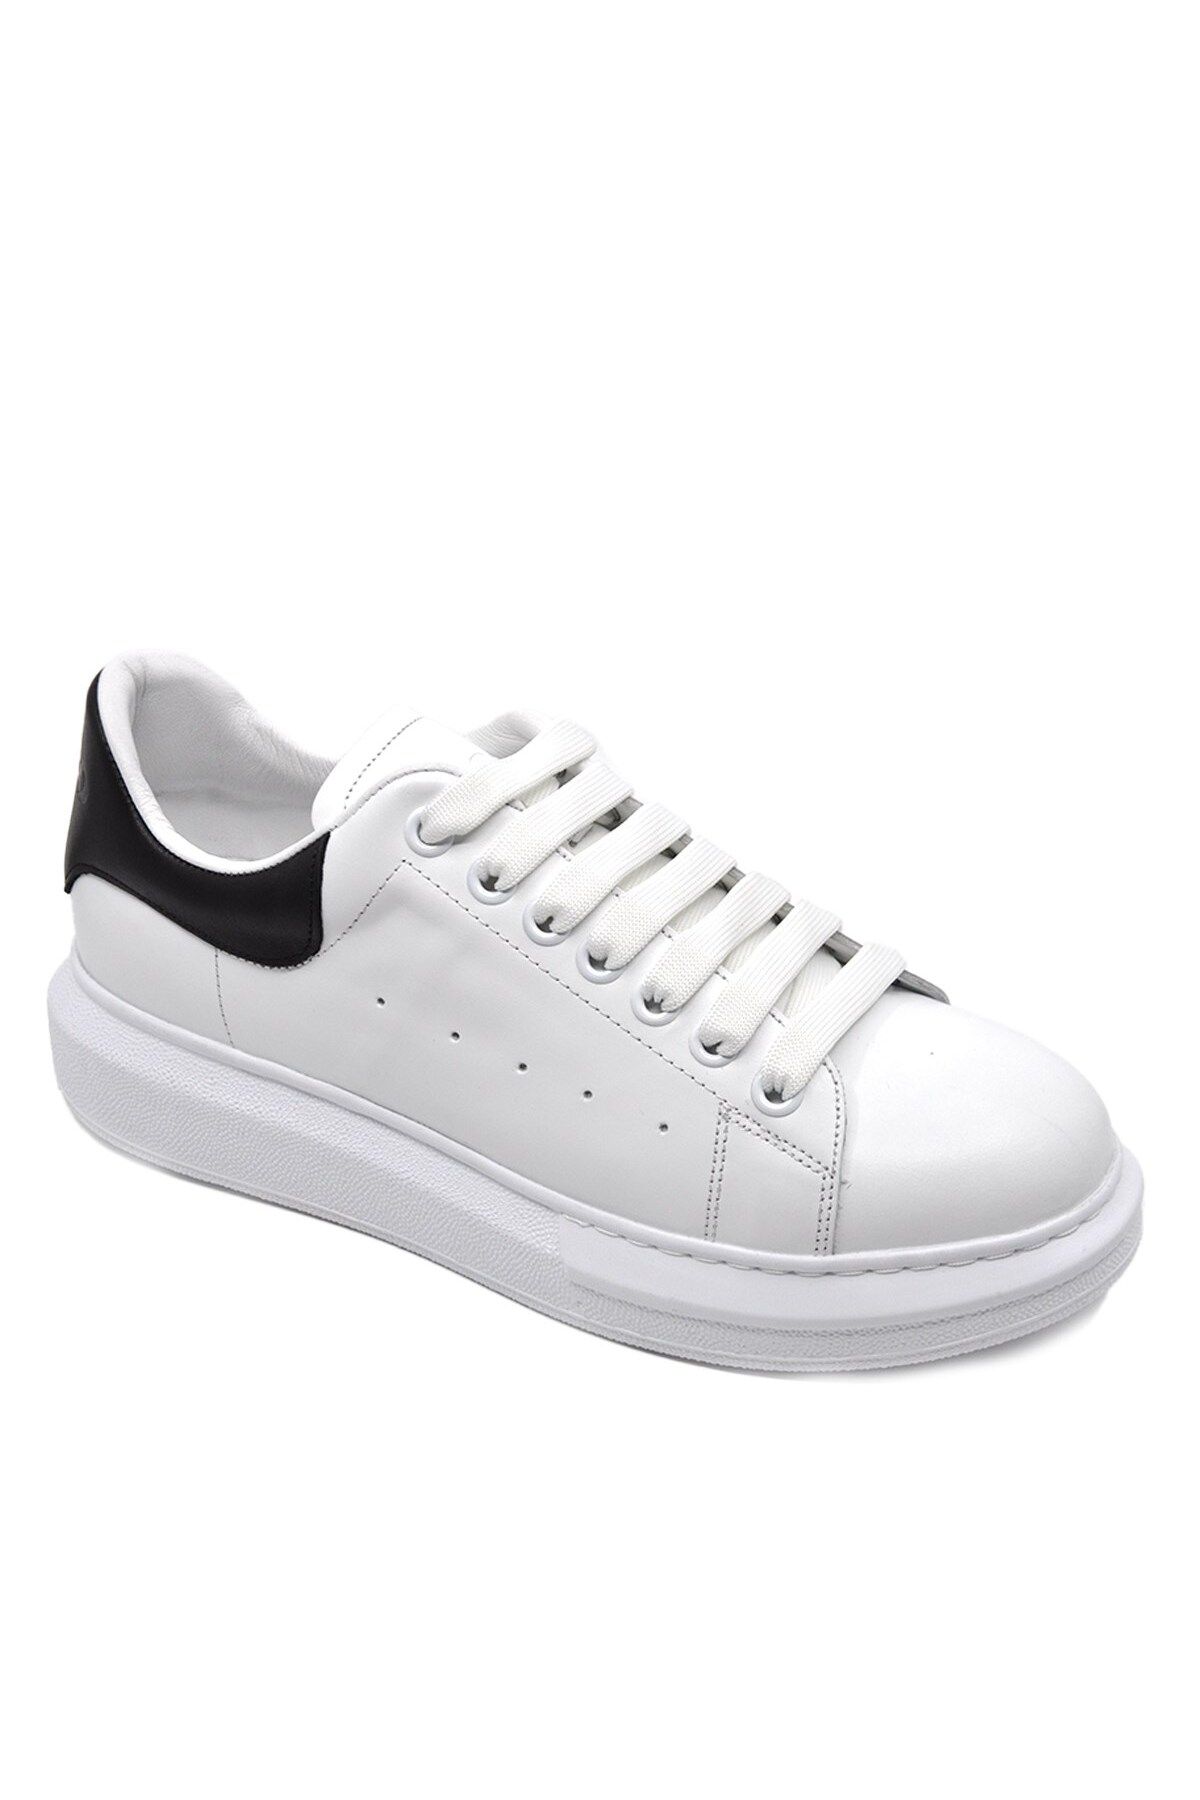 Fosco Hakiki Deri Erkek Sneaker Ayakkabı Beyaz Siyah 9838